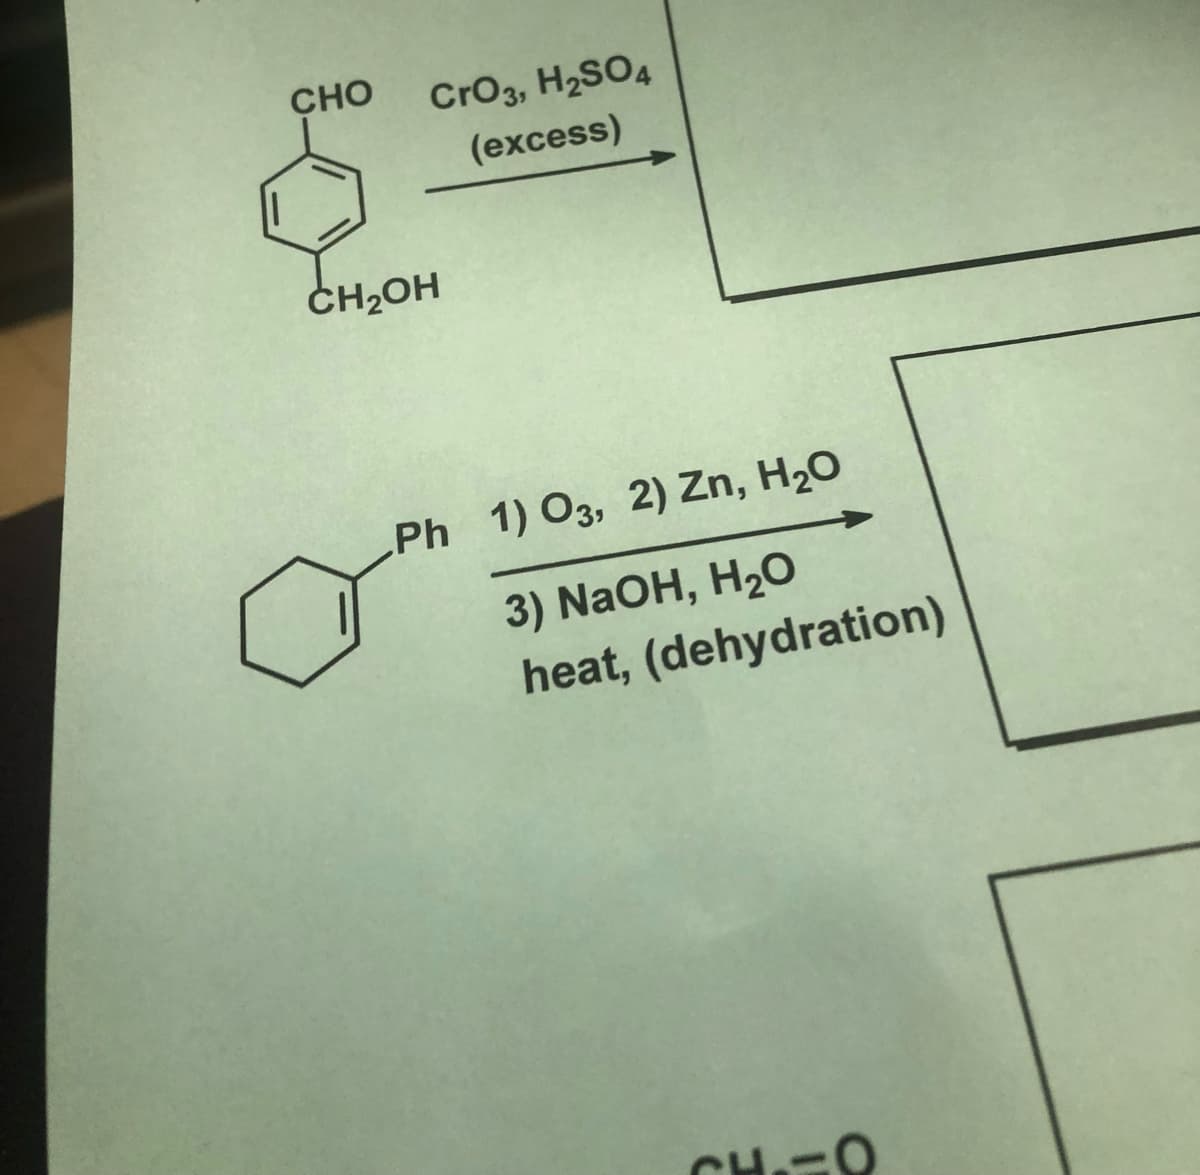 CHO
CrO3, H2SO4
(excess)
ČH2OH
Ph 1) O3, 2) Zn, H20
3) NaOH, H20
heat, (dehydration)
